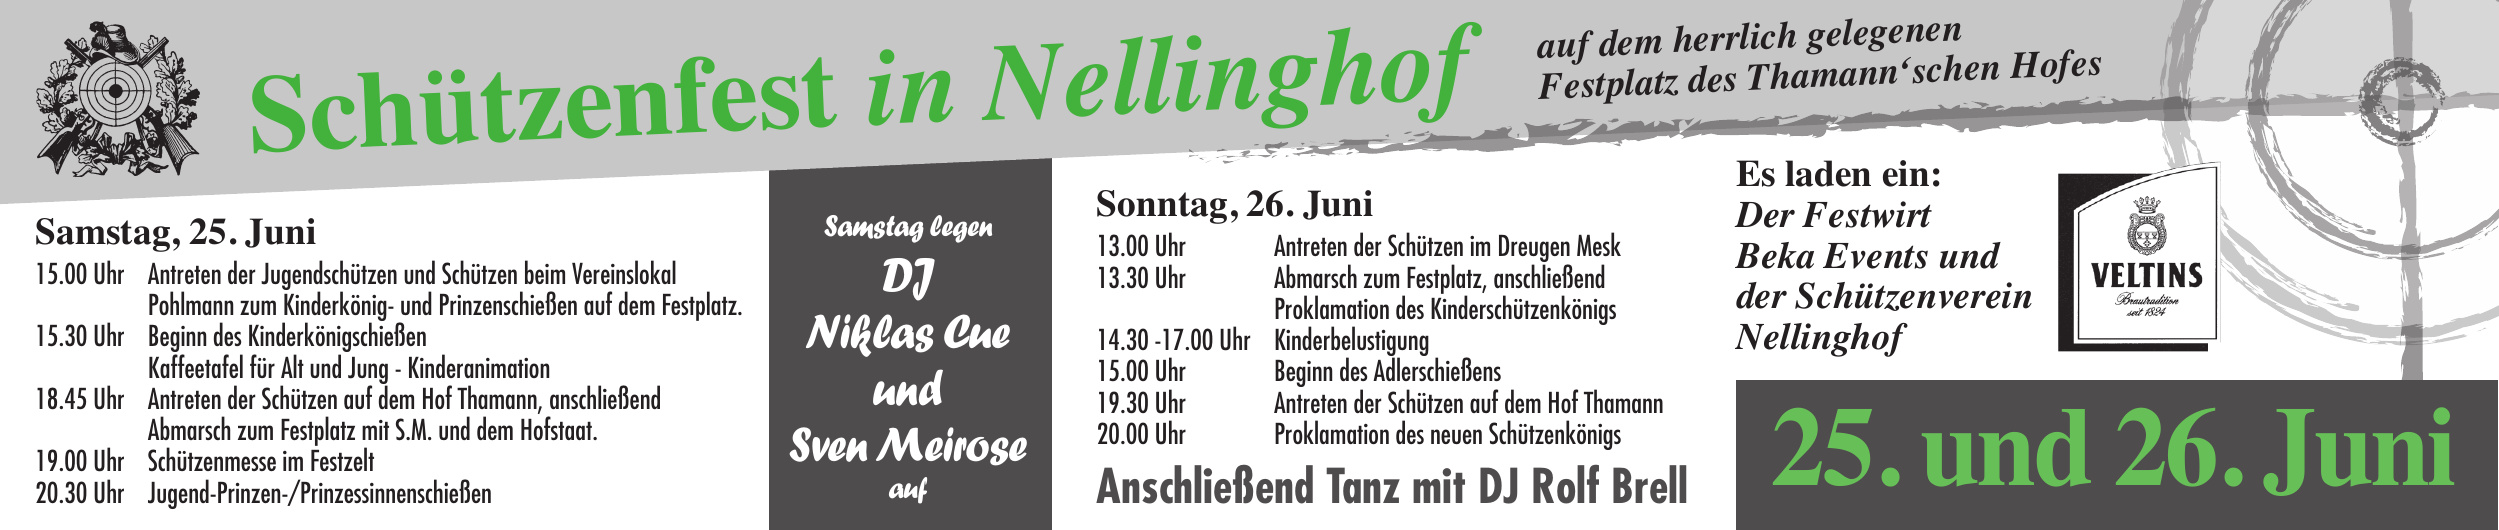 Schützenfest in Nellinghof